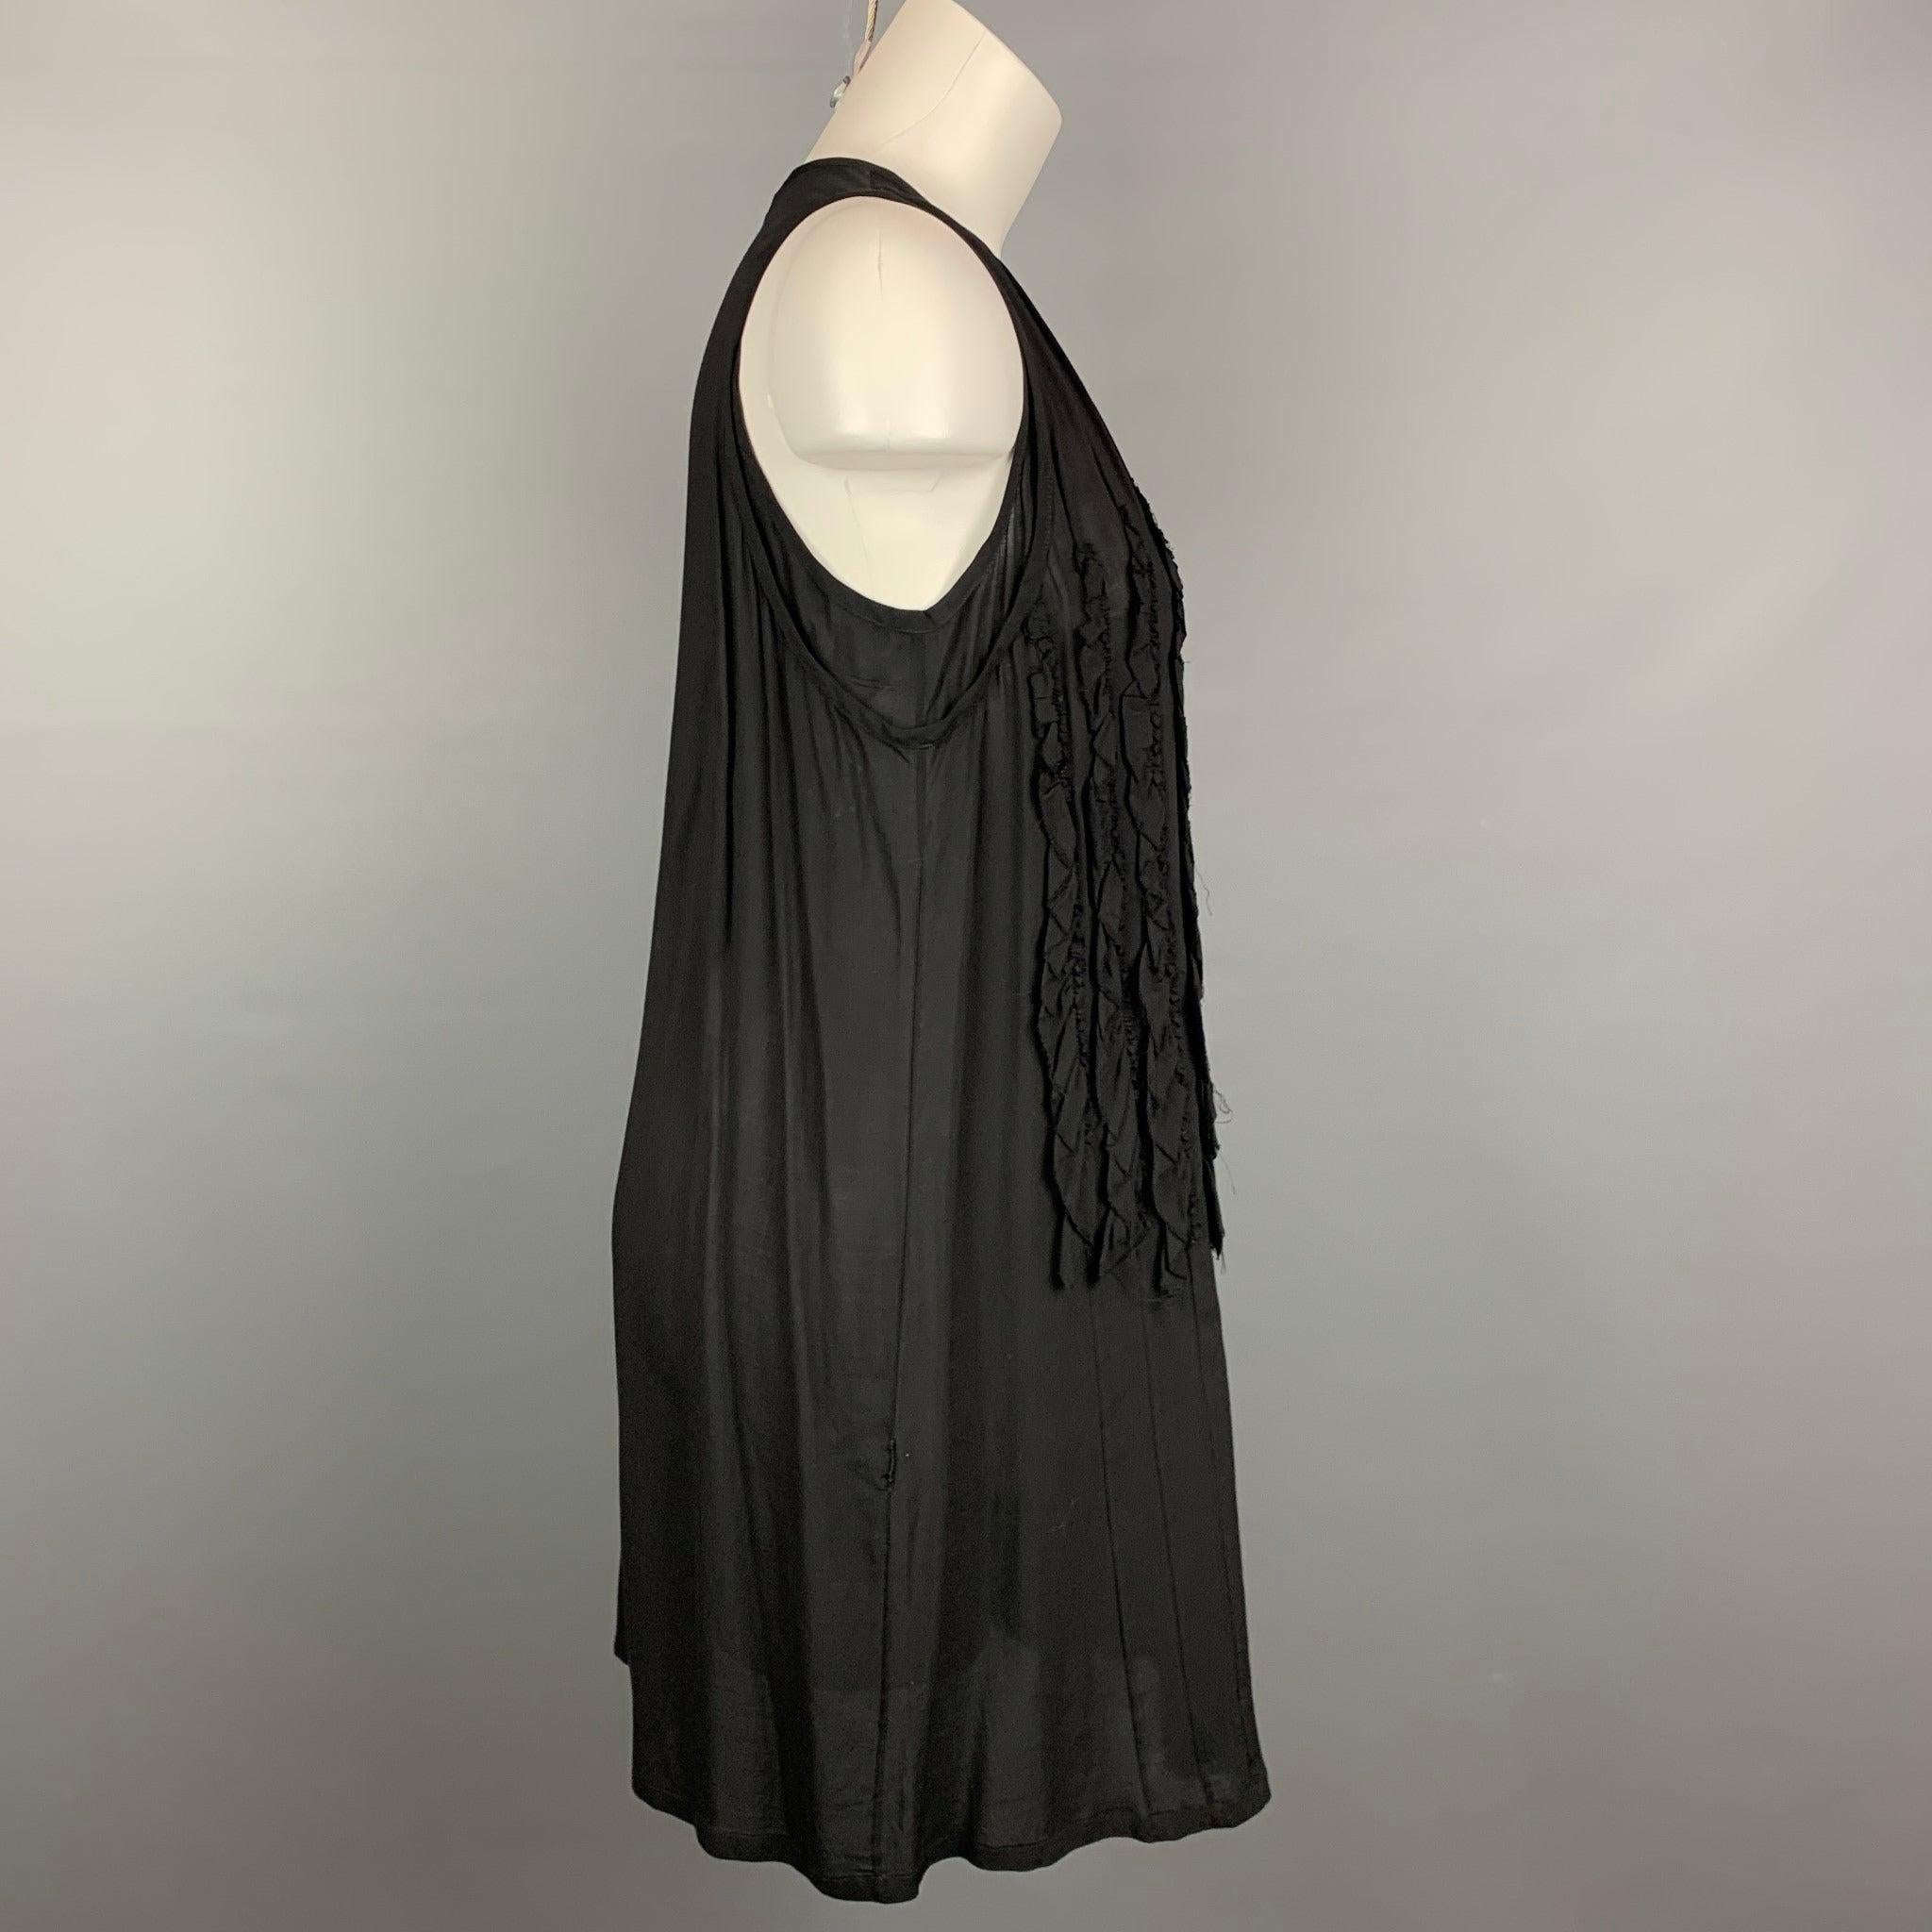 La robe sans manches ANN DEMEULEMEESTER est confectionnée dans une matière transparente noire et présente un motif à volants sur le devant, ainsi qu'un style décontracté.Très bien
Etat d'occasion. 

Marqué :   36 

Mesures : 
  Poitrine : 36 pouces 